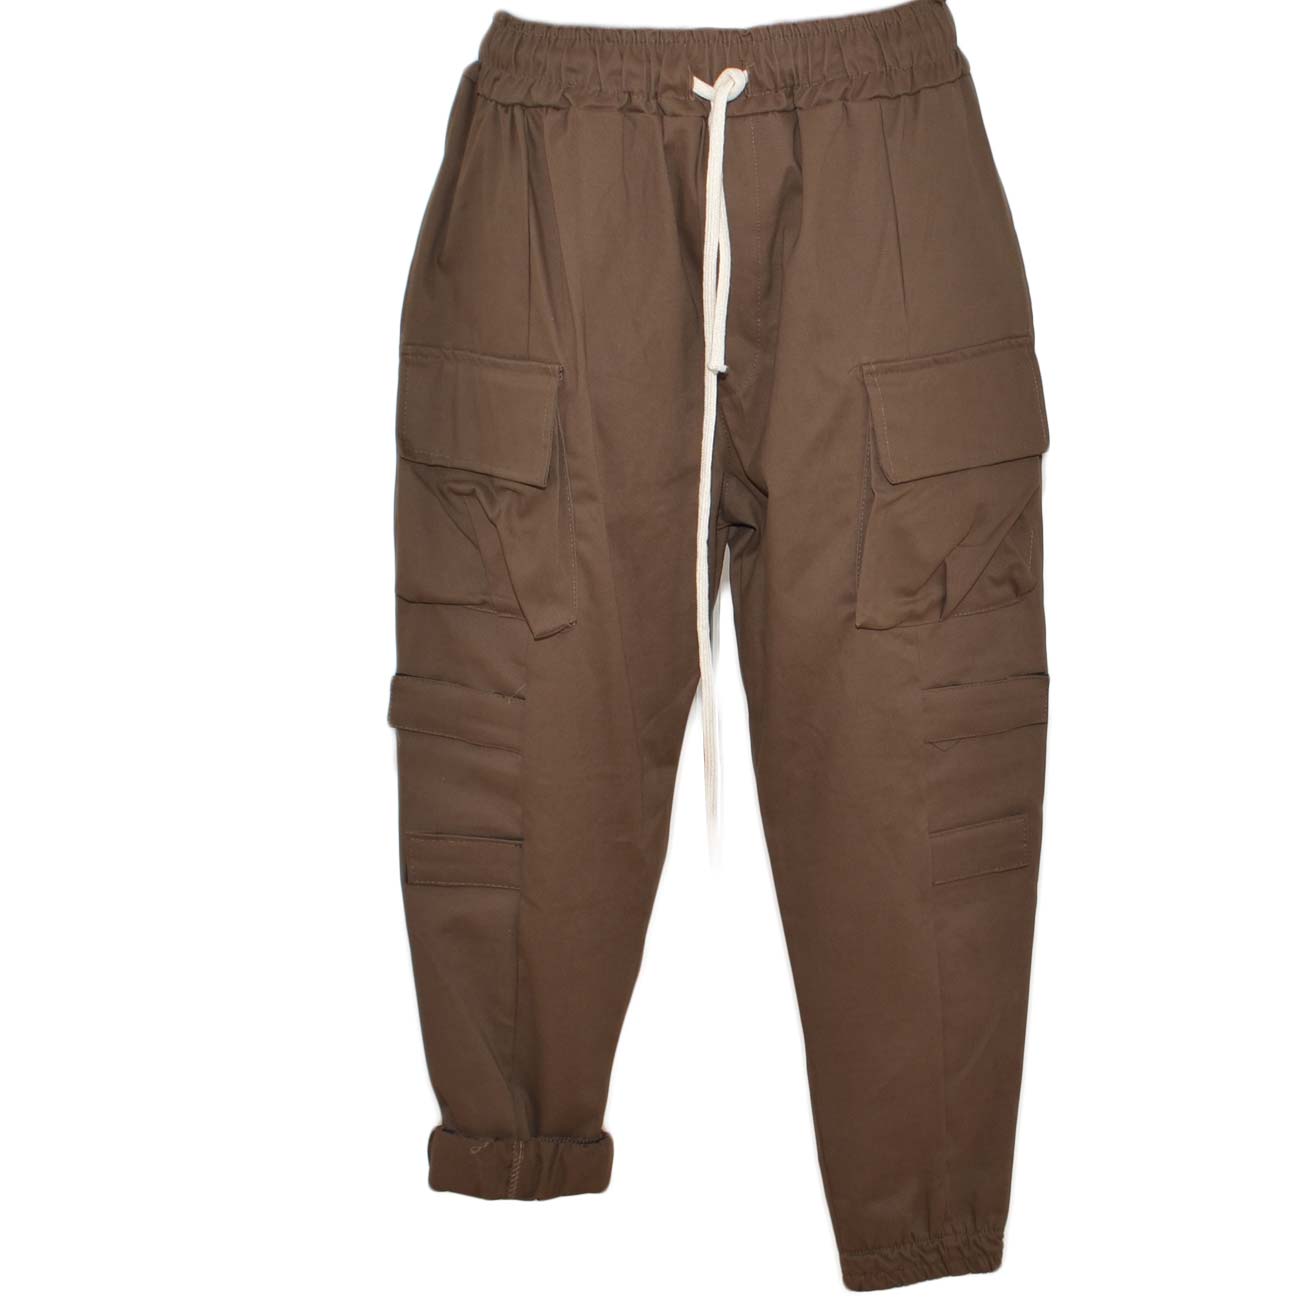 Pantaloni cargo uomo cuoio con tasconi laterali ed elastico in vita con laccio comodo casual moda militare .